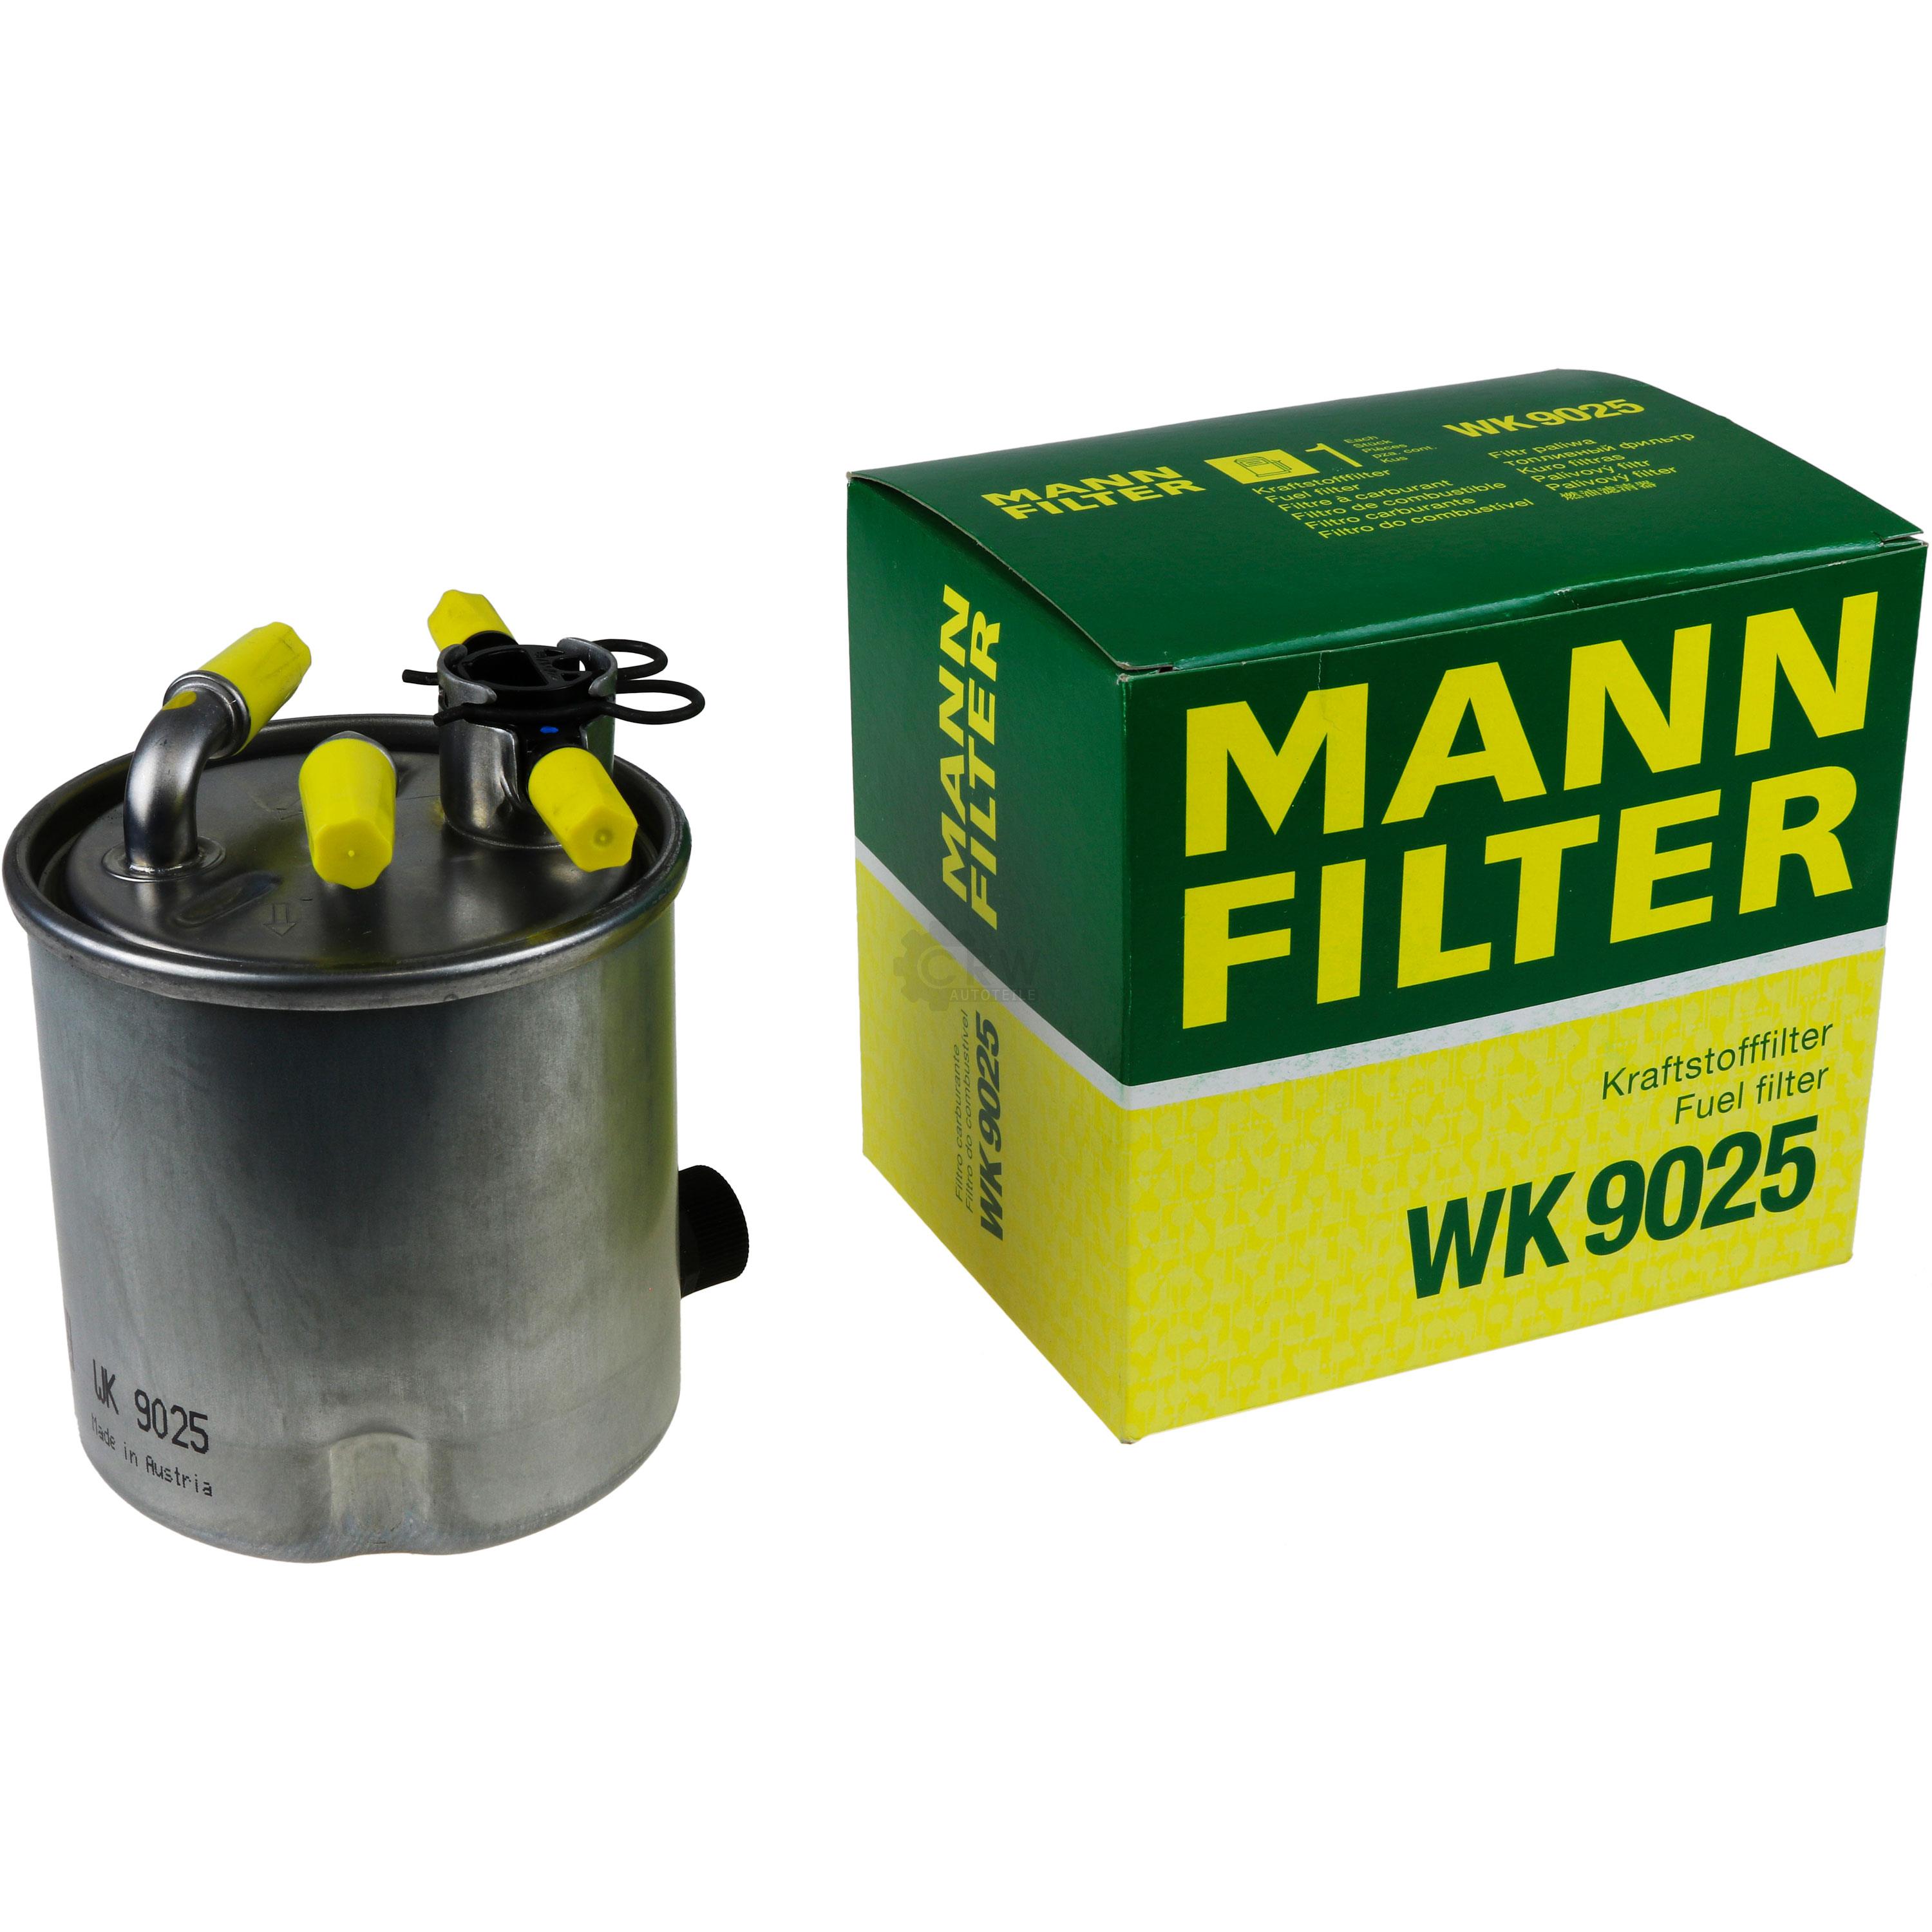 MANN-FILTER Kraftstofffilter WK 9025 Fuel Filter